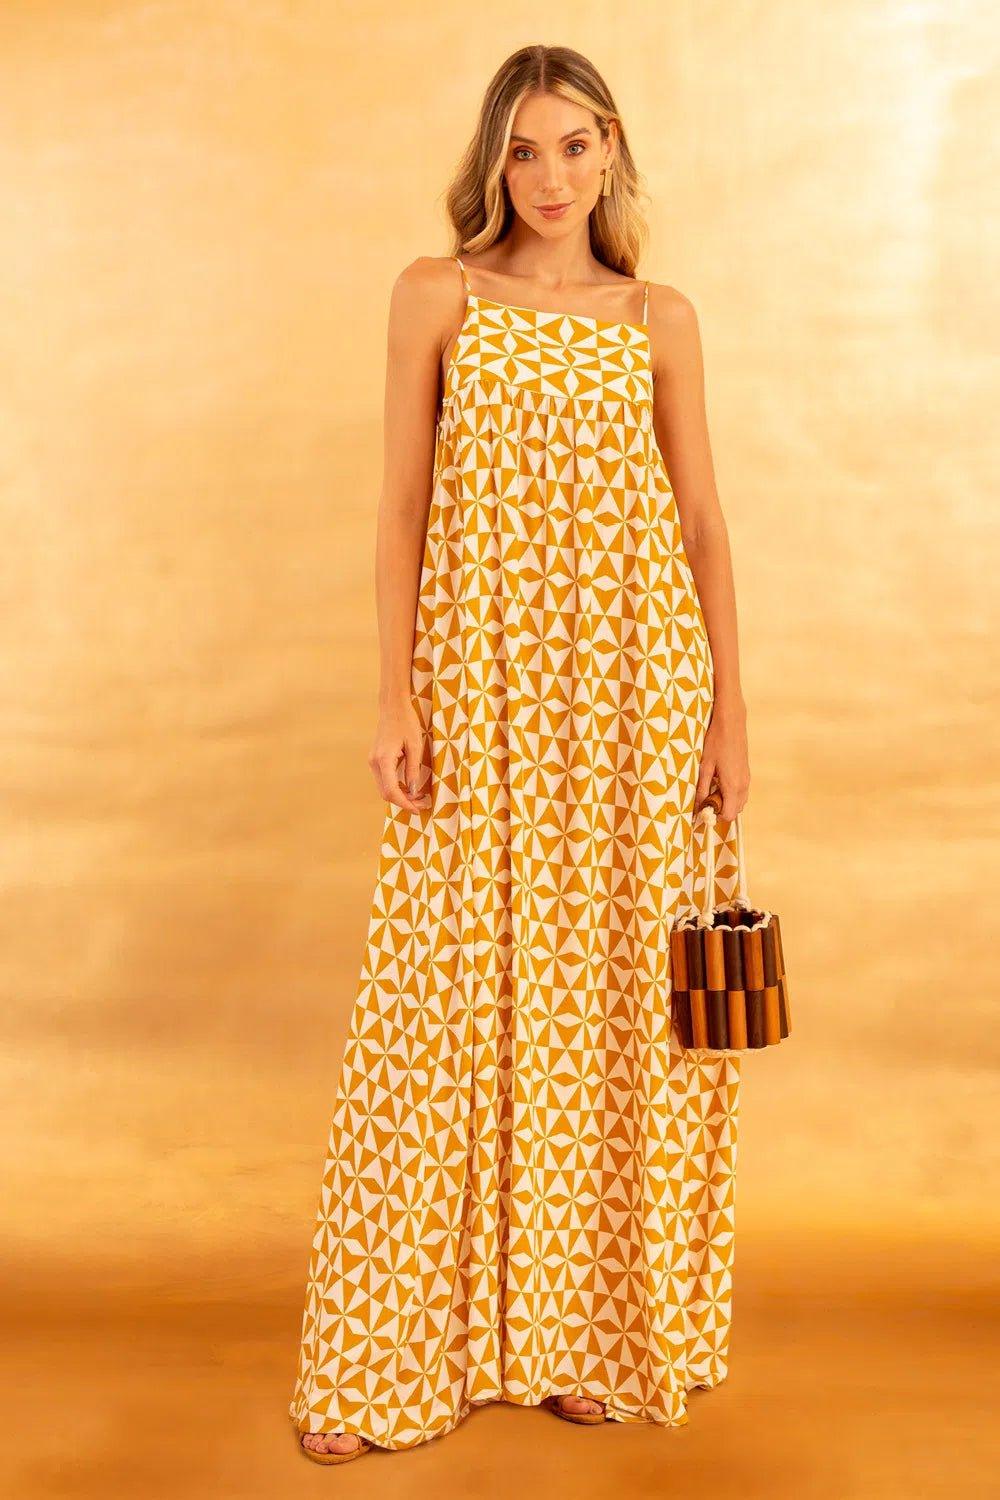 Athine Tiles Honey Dress - Spring in Summer